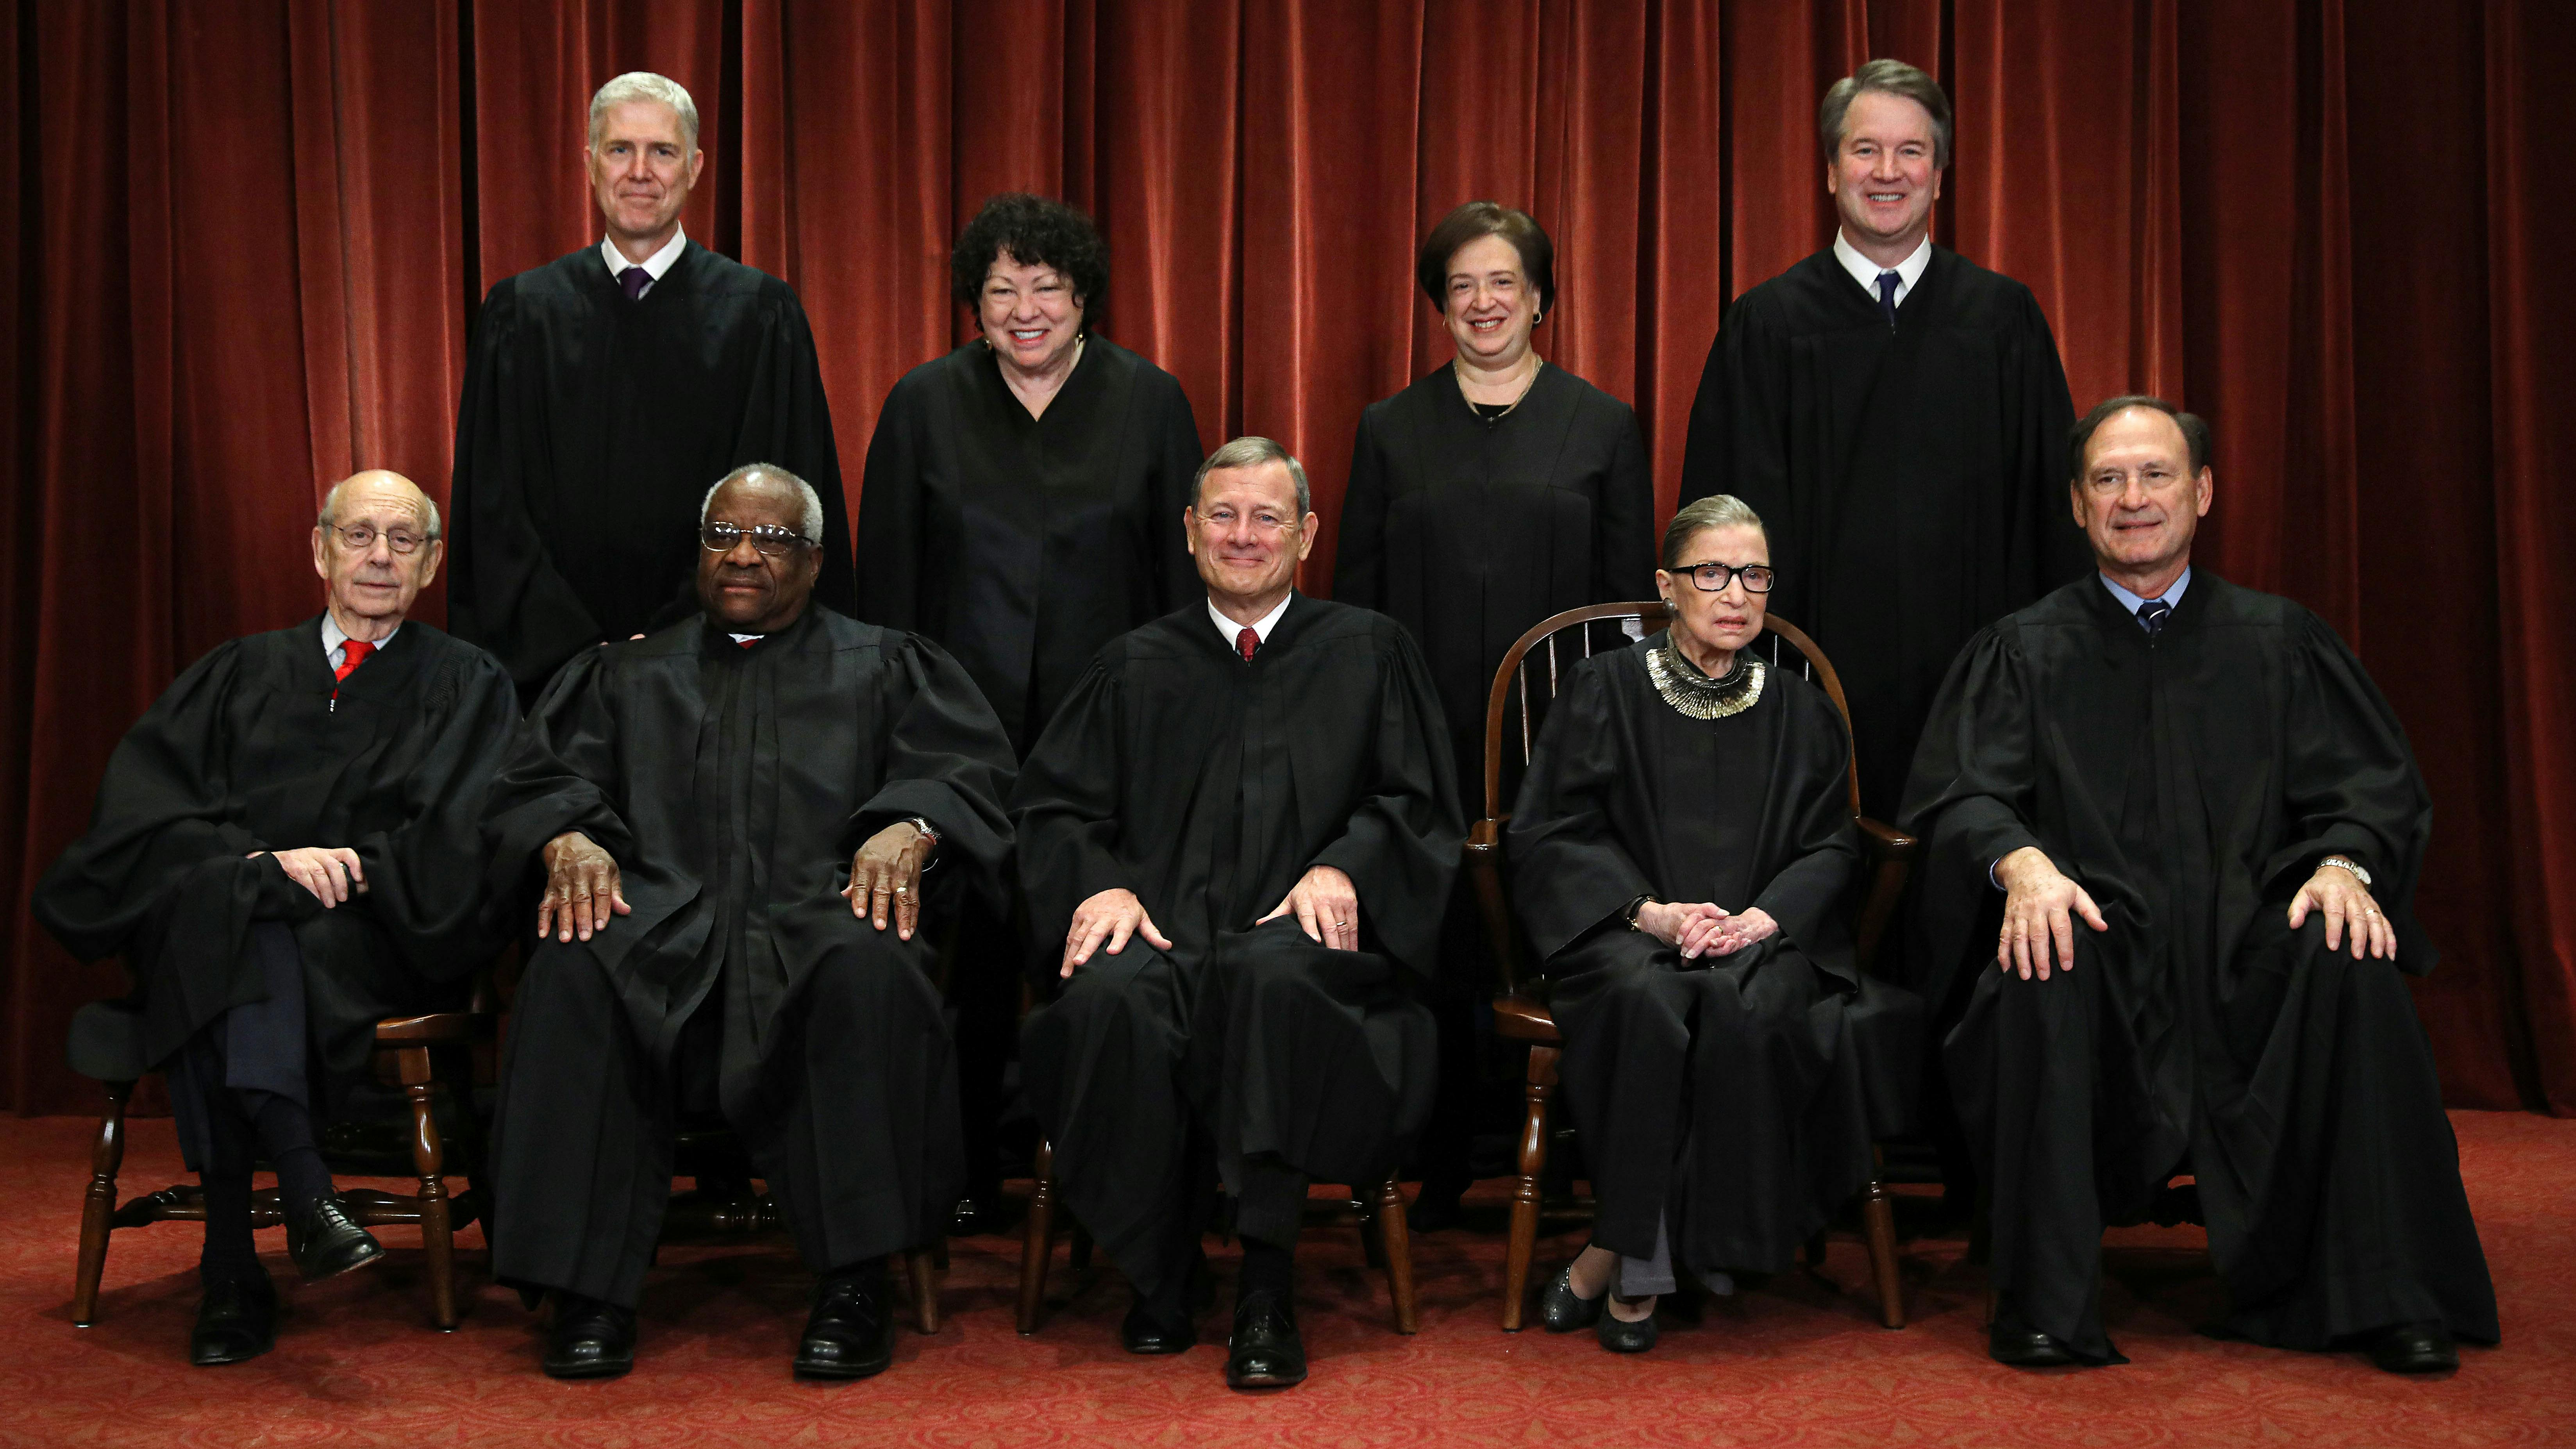 Wir sehen auf diesem Foto die neun Richter des Supreme Court in ihren Roben, es ist ein Bild von 2018, deshalb sind auch Ruth Bader Ginsburg und Brett Kavanaugh zu sehen. 